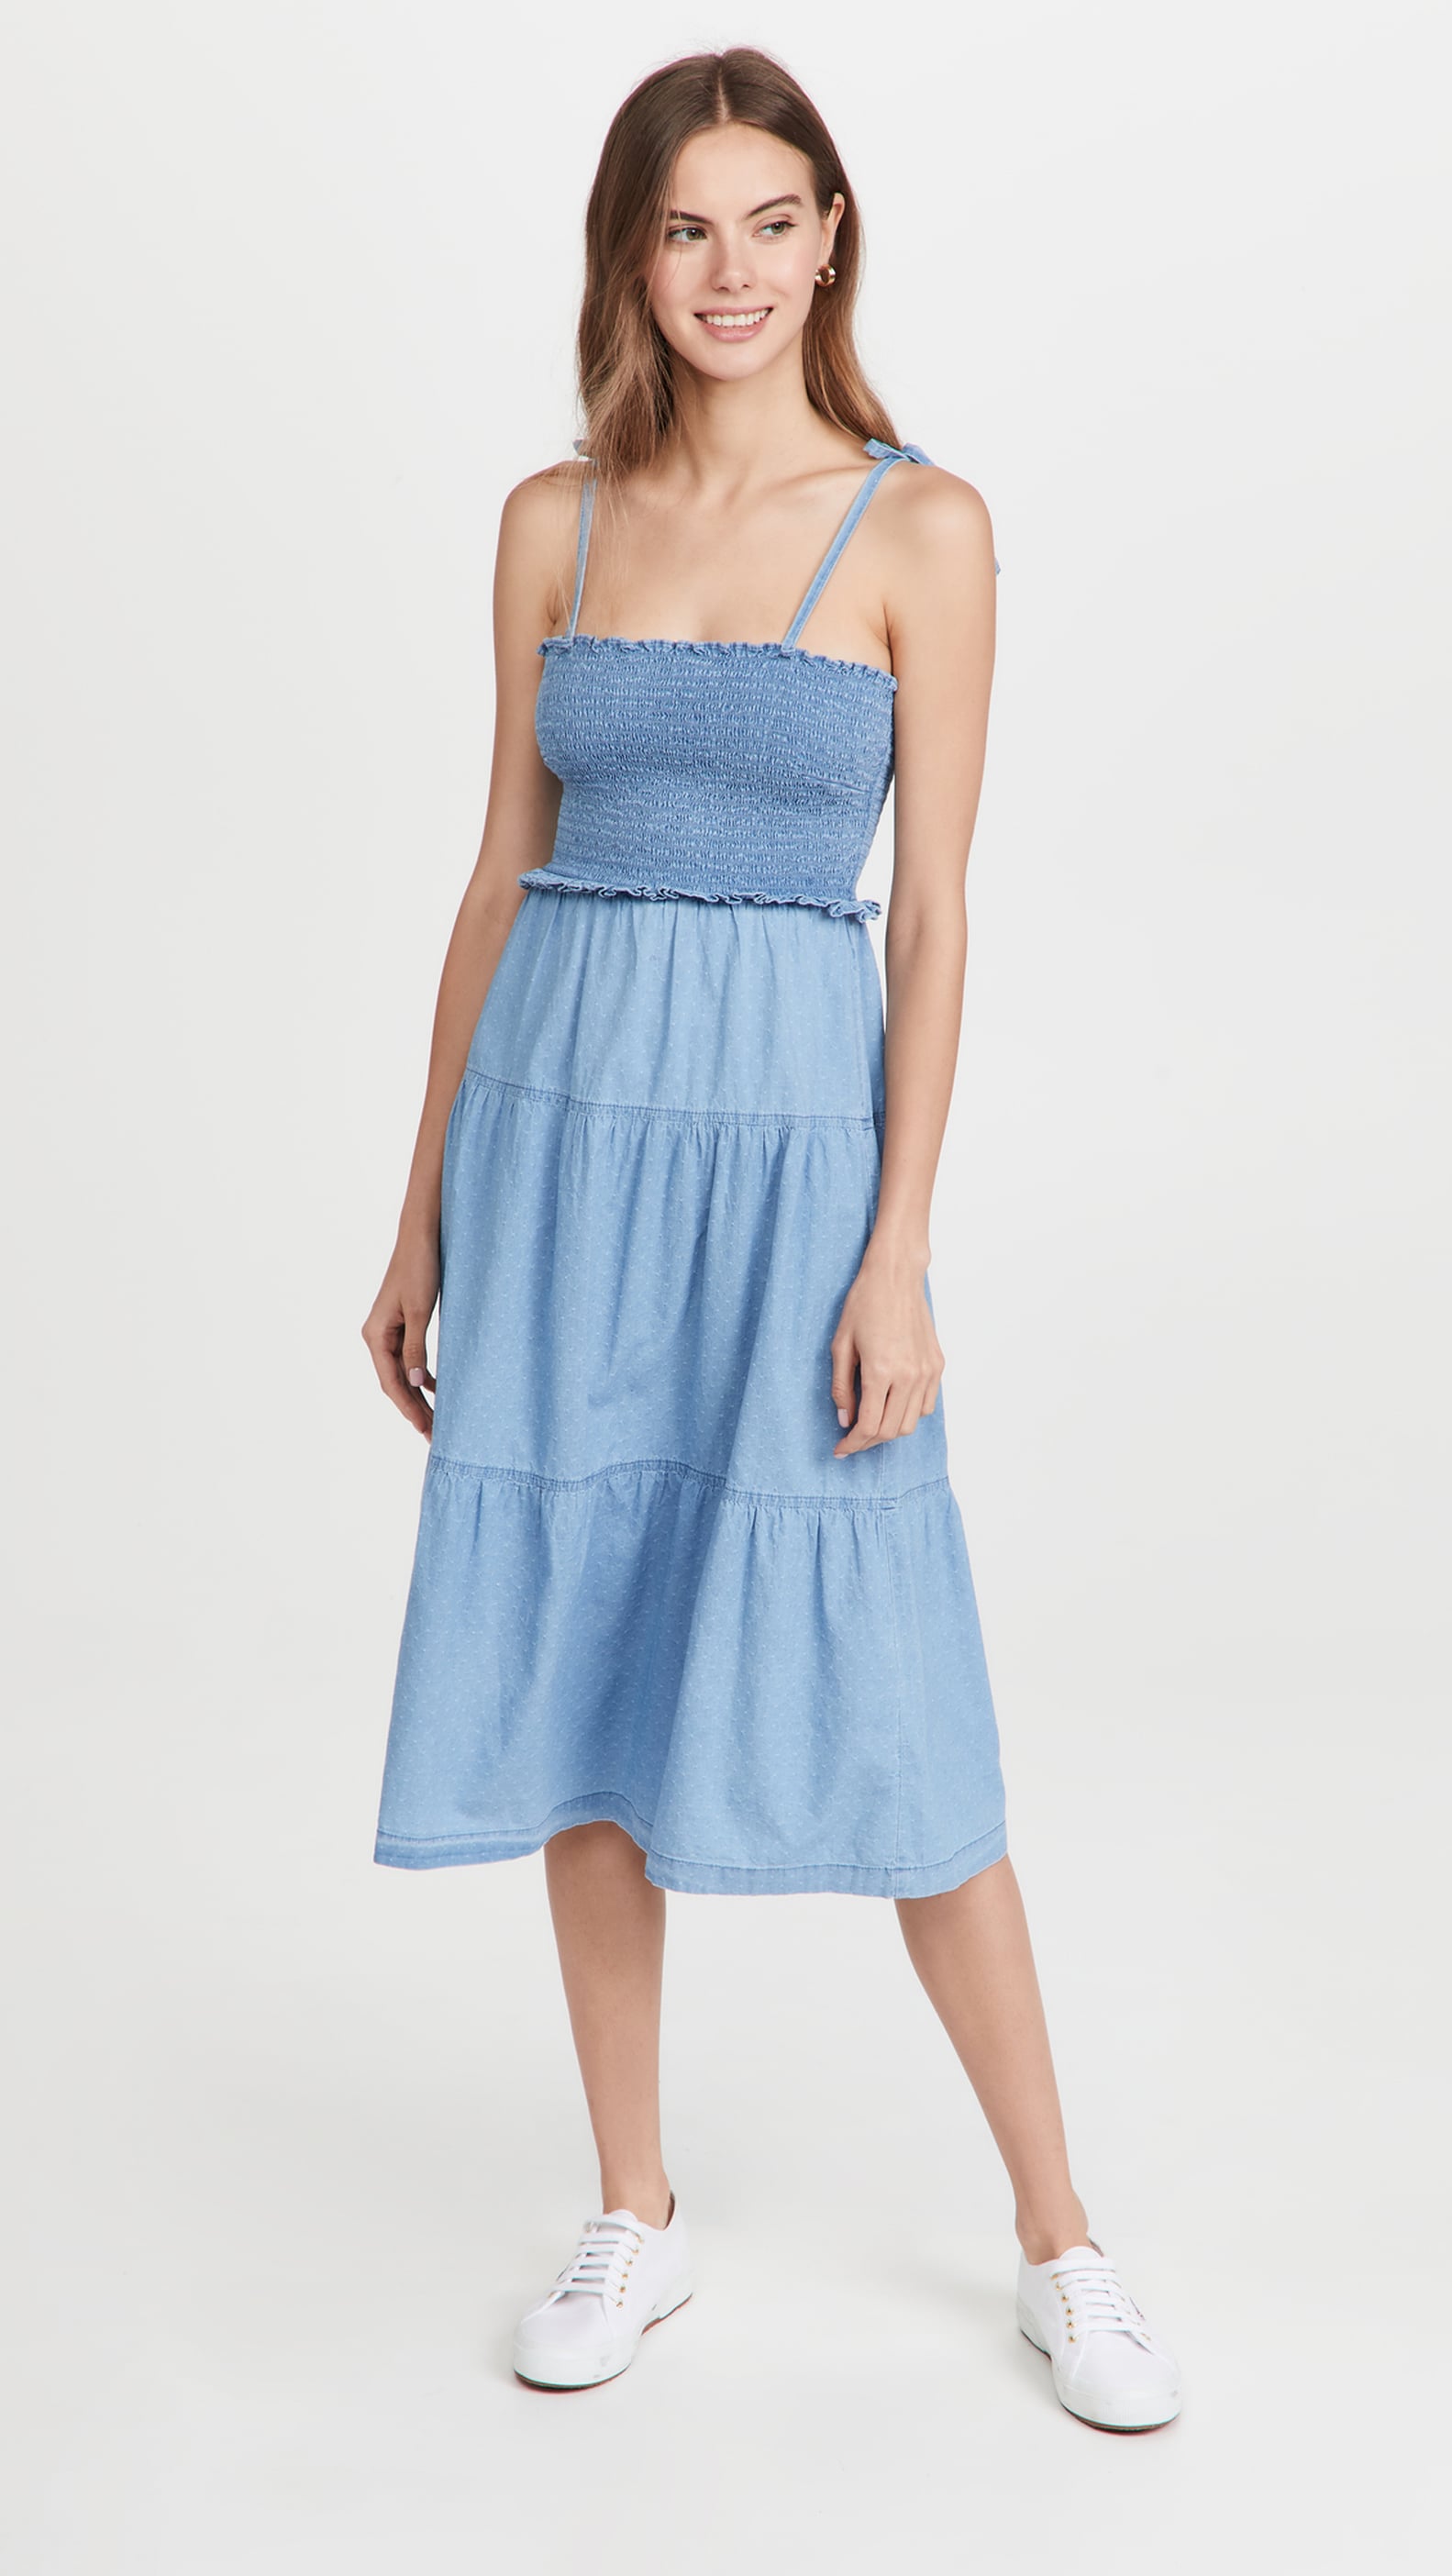 Best Smocked Dresses For Summer | POPSUGAR Fashion